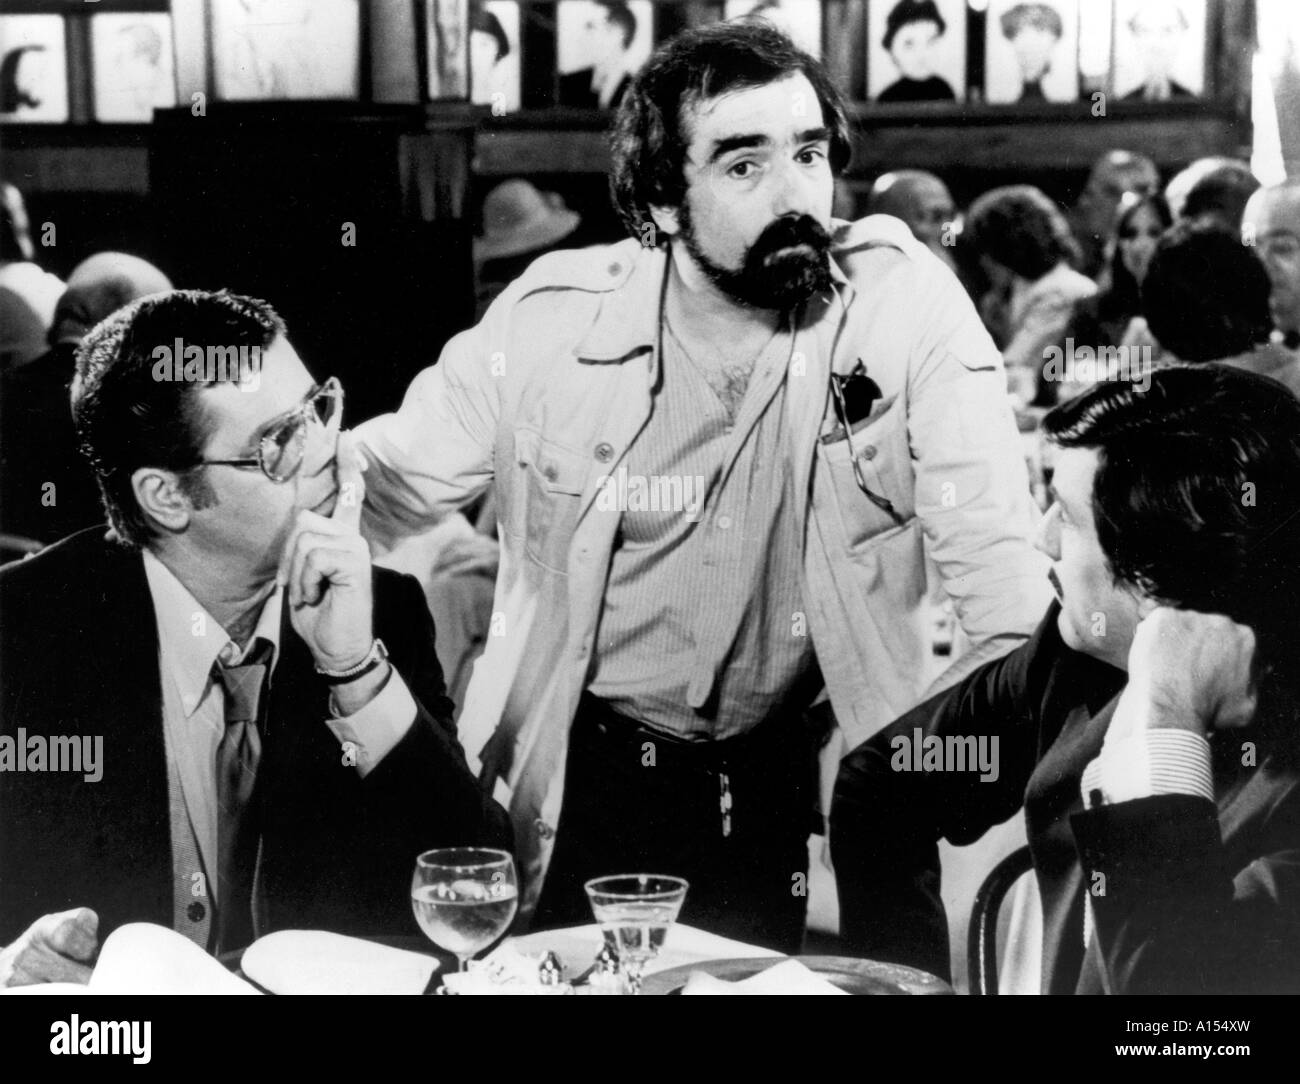 Le Roi de comédie Année 1983 réalisateur Martin Scorsese Robert de Niro Jerry Lewis Martin Scorsese Shooting photo Banque D'Images